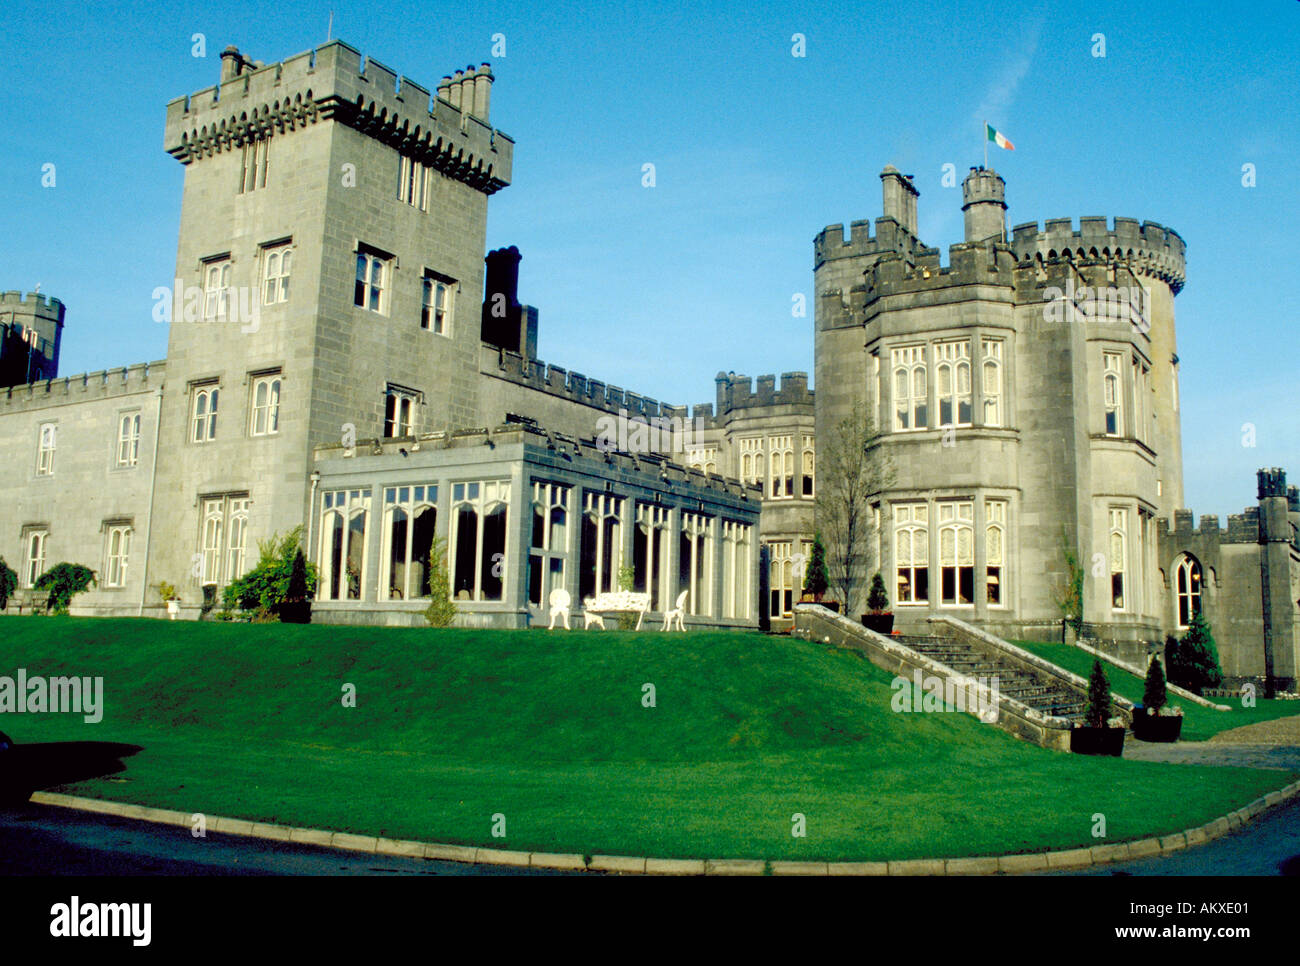 Beeindruckende Dromoland Castle oder Manor erhebt sich majestätisch über einen gepflegten Rasen, dies ist eines der großen Burg Stockfoto